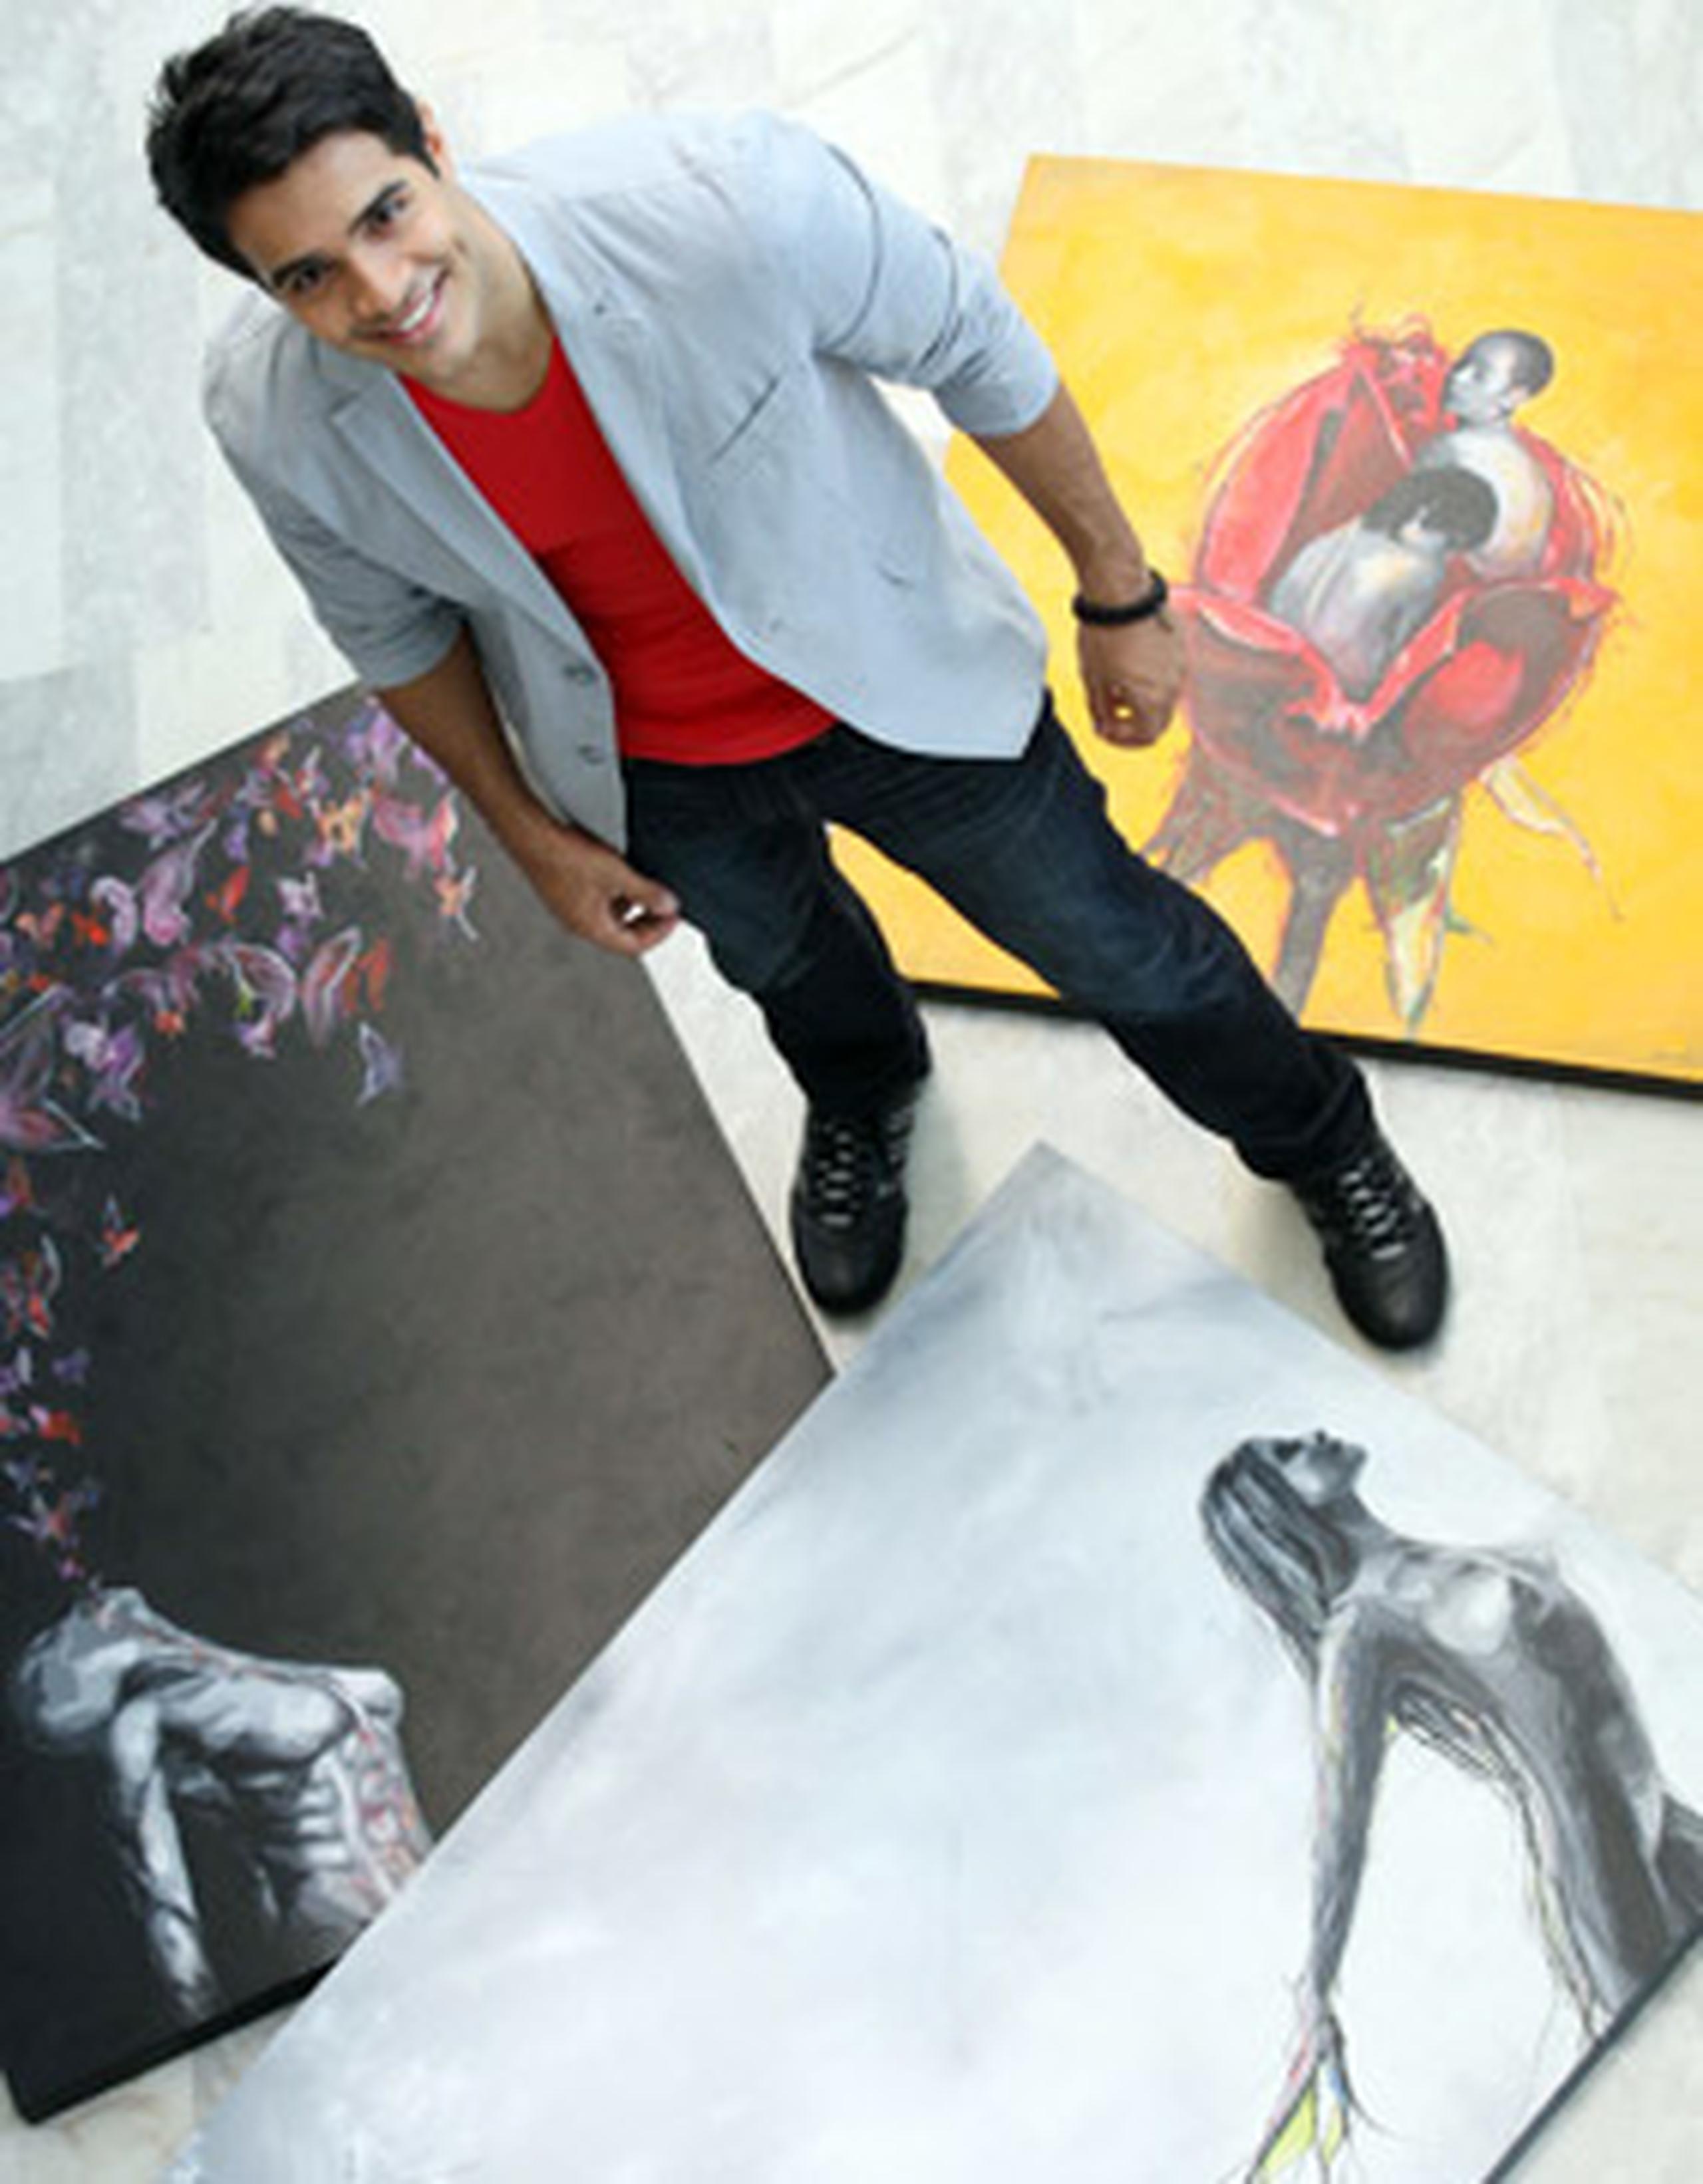 Éktor Rivera viene elaborando estas pinturas desde el 2010 y ya tiene  cerca de 30 obras. <font color="yellow">( juan.alicea@gfrmedia.com)</font>